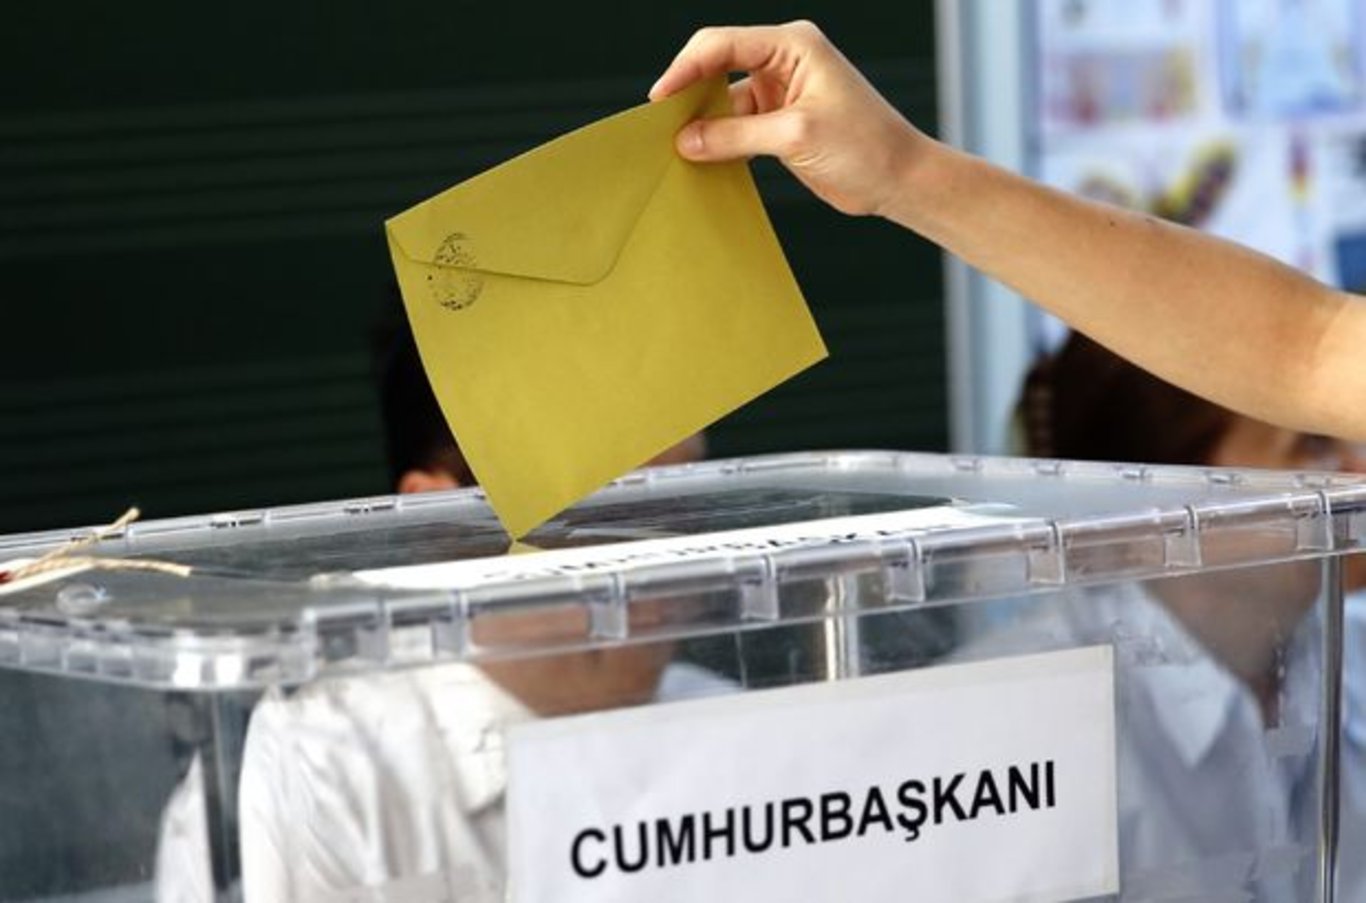 Oy zarfına yazı yazmak yasak mı? 2023 Seçimlerde oy kullanılacak zarfın içine not koymak yasak mı ve cezası var mı?